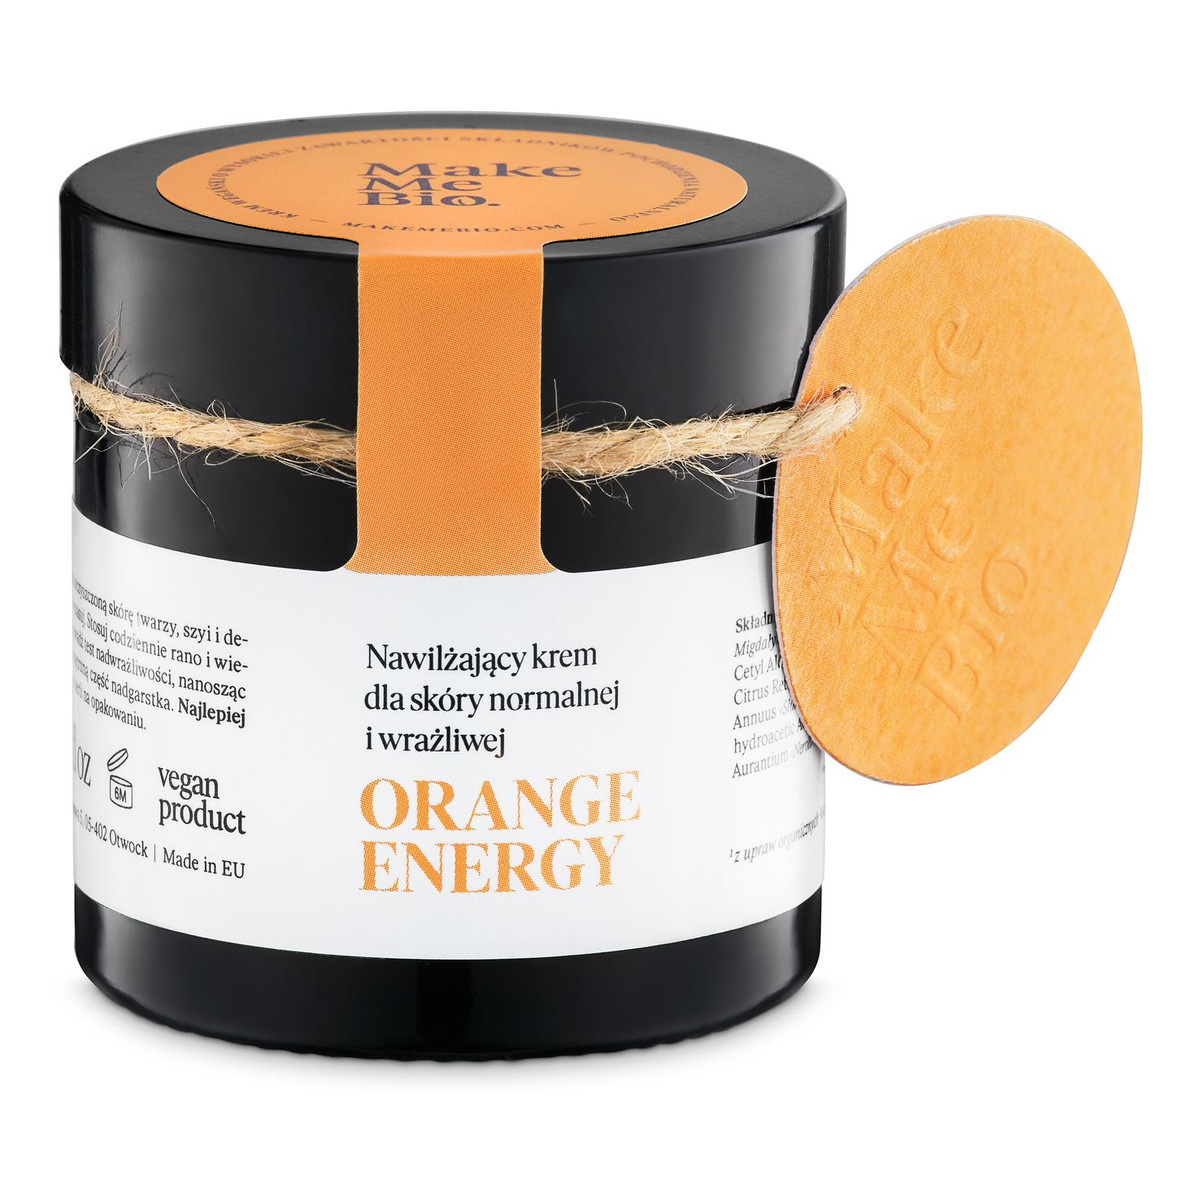 Make Me Bio Orange Energy Nawilżający Krem Dla Skóry Normalnej i Wrażliwej 60ml